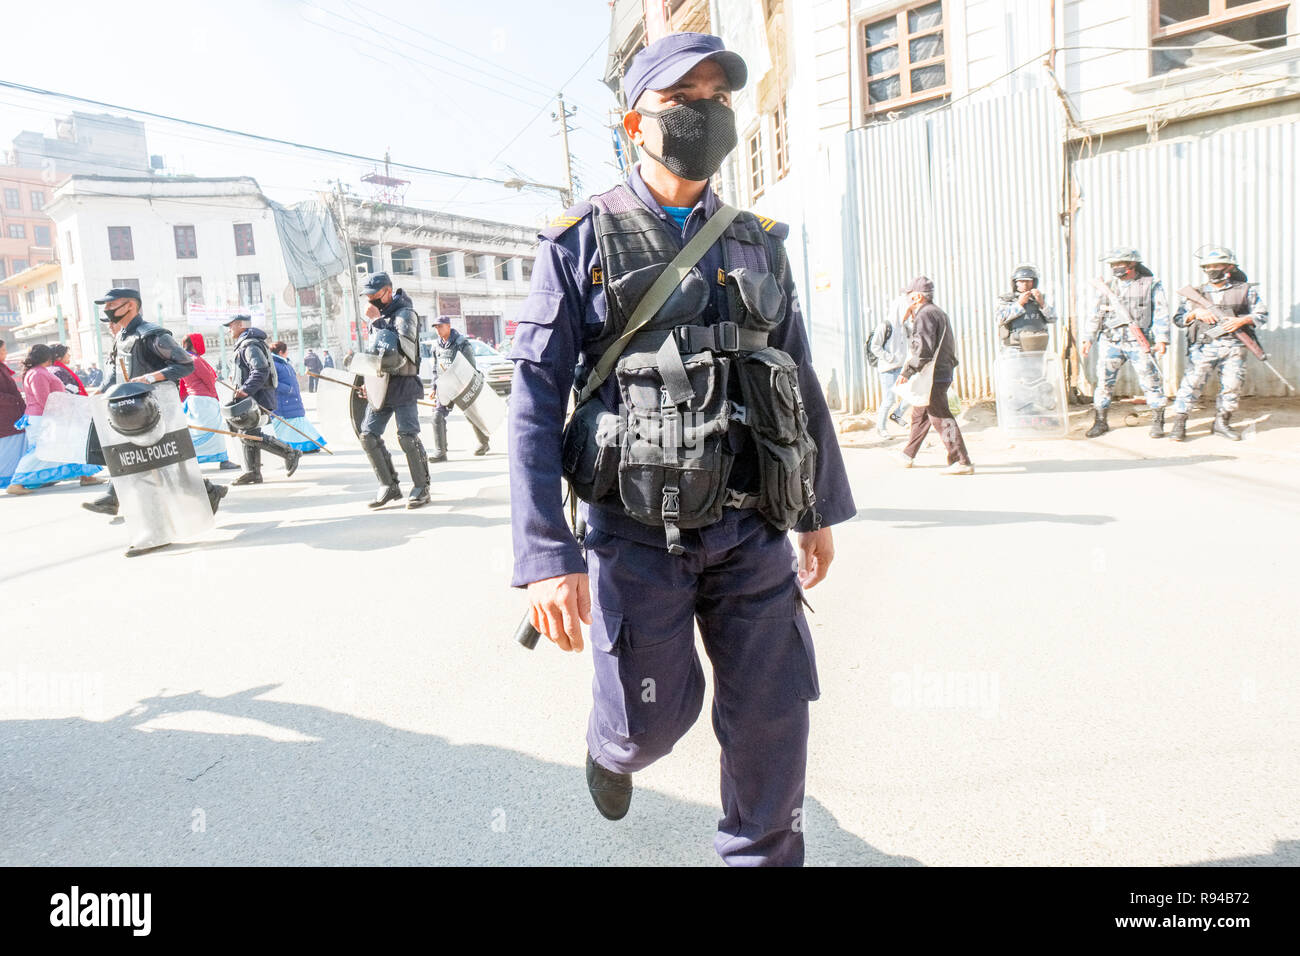 La polizia di tumulto marcia su strade del Nepal città capitale Kathmandu Foto Stock